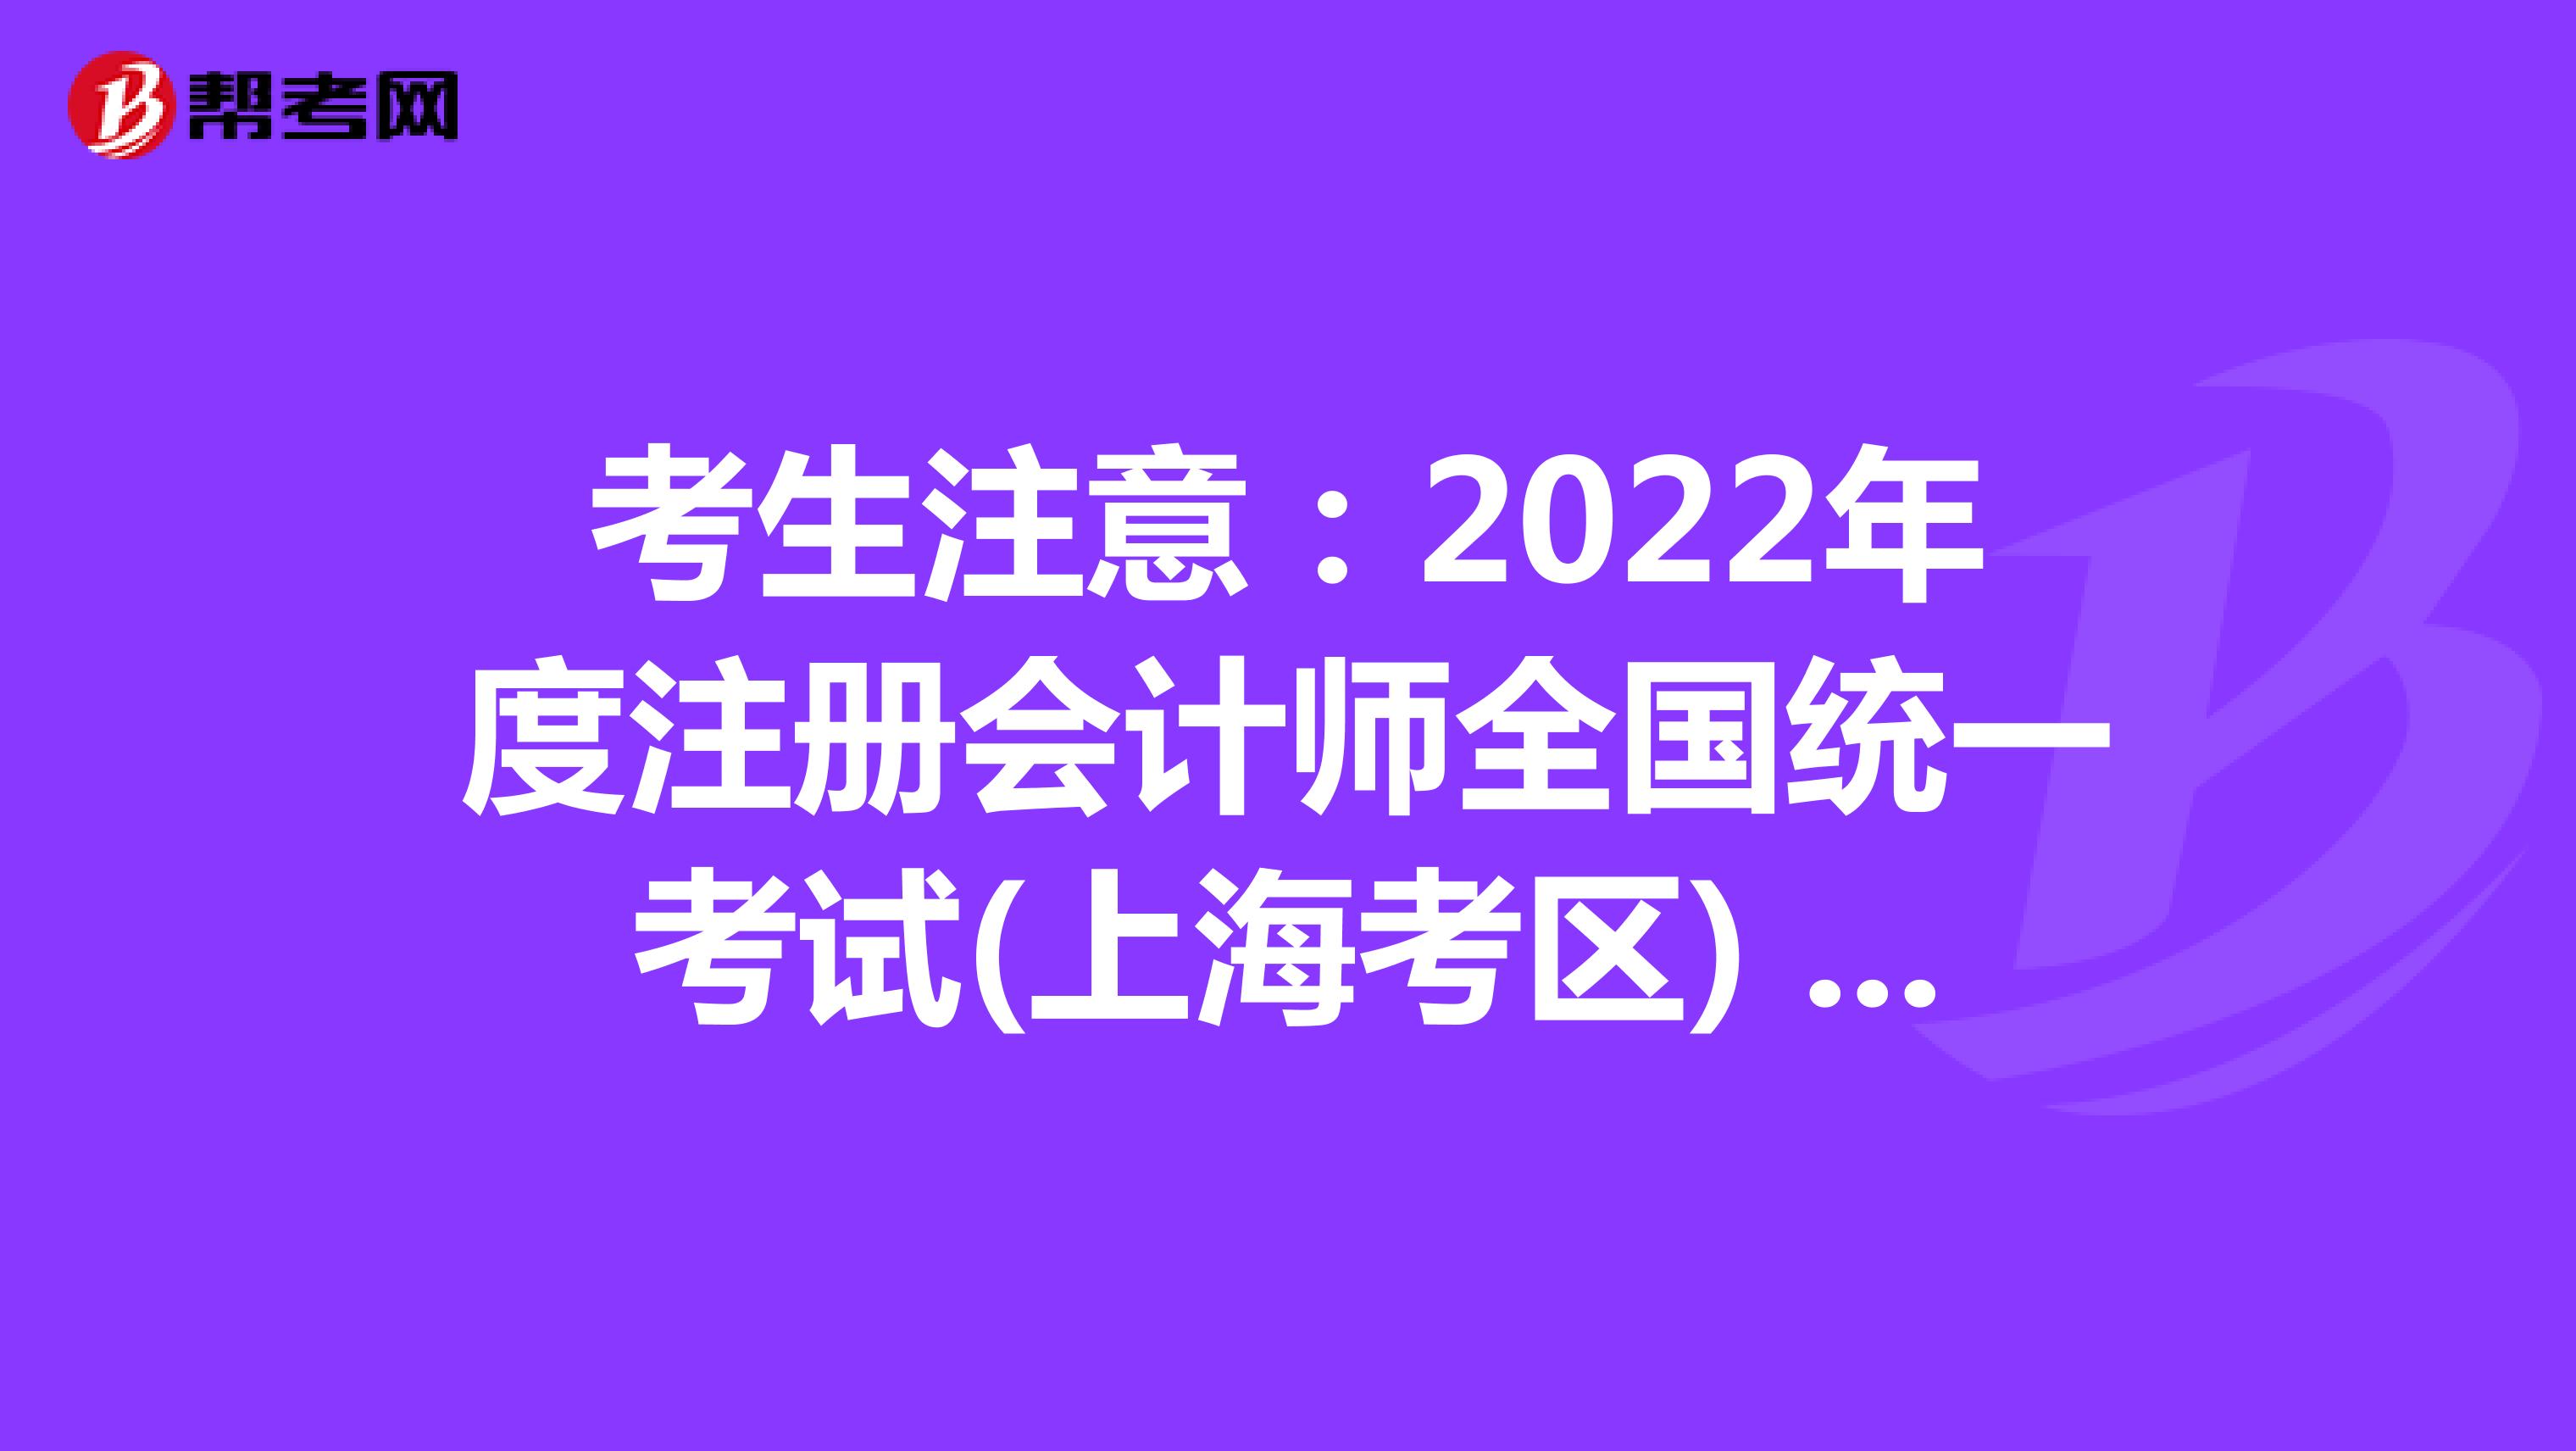 考生注意：2022年度注册会计师全国统一考试(上海考区) 考生疫情防控告知书已发布